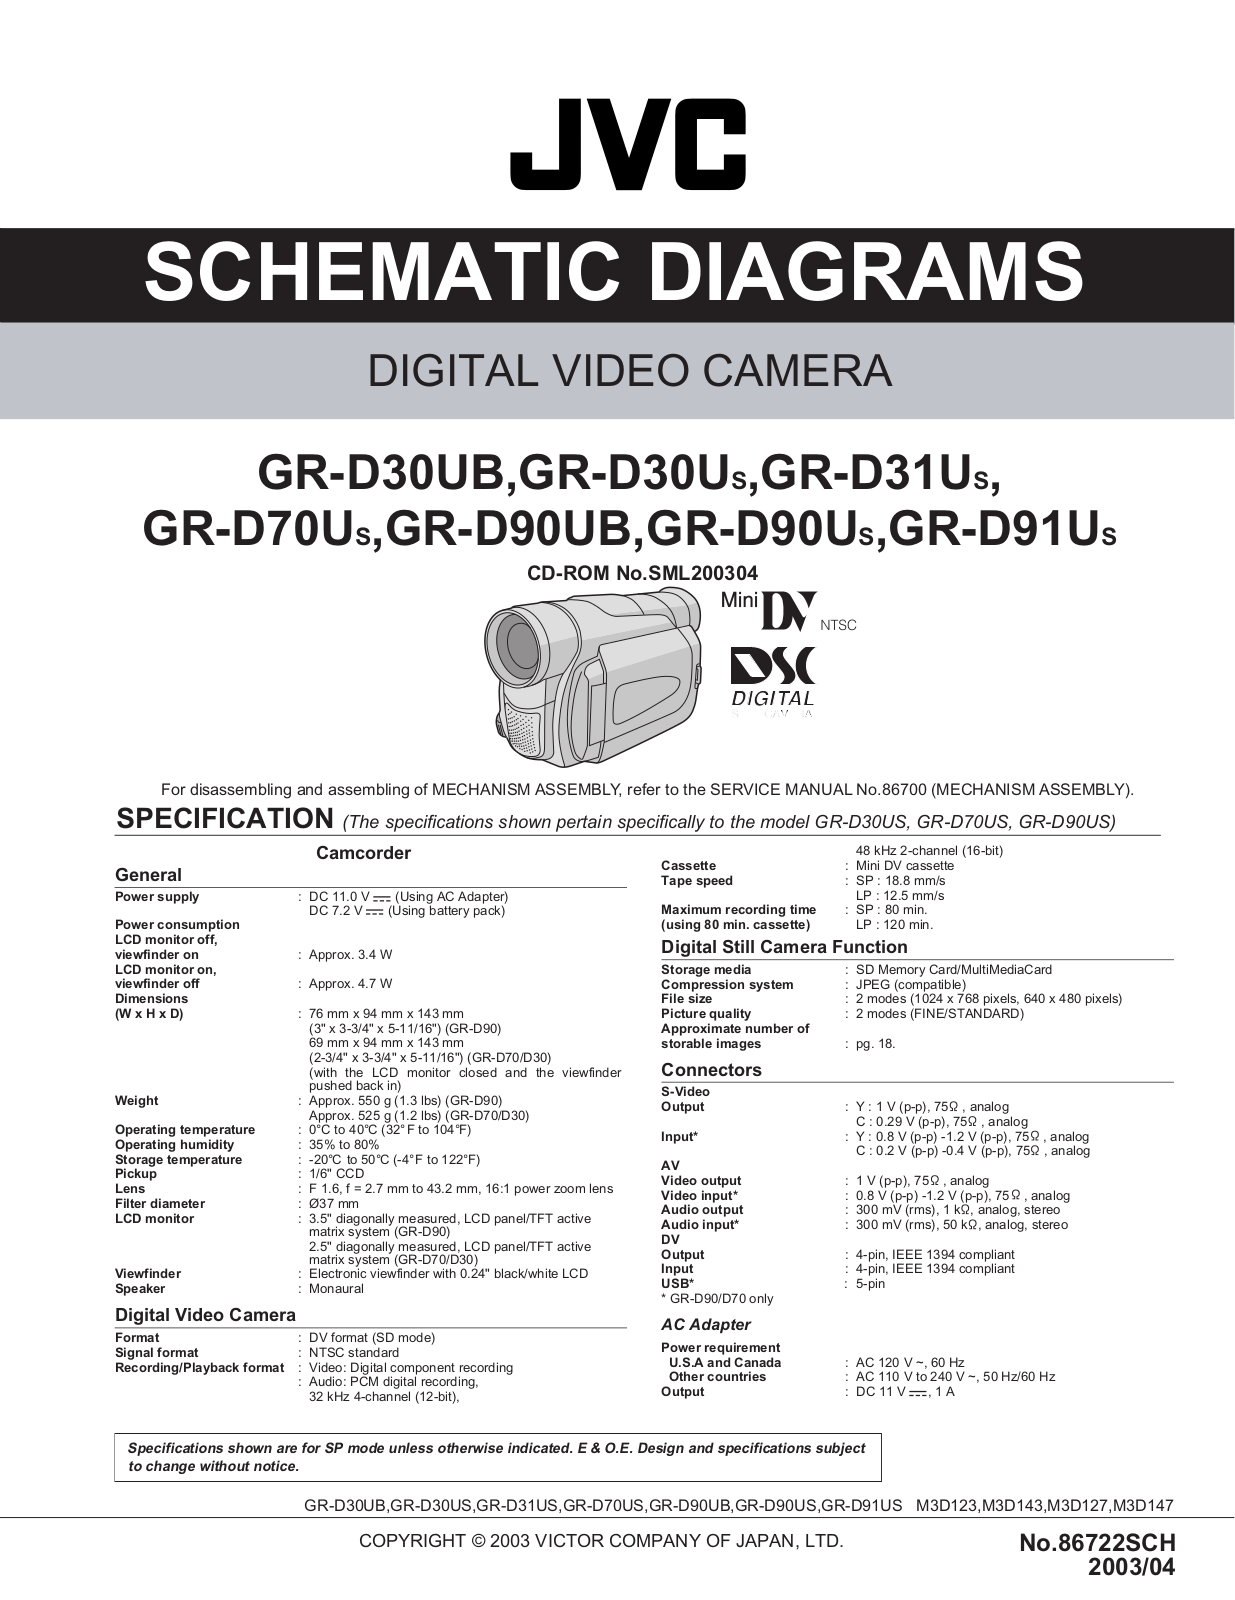 JVC GR-D30UB, GR-D30US, GR-D31US, GR-D70US, GR-D90UB Schematics